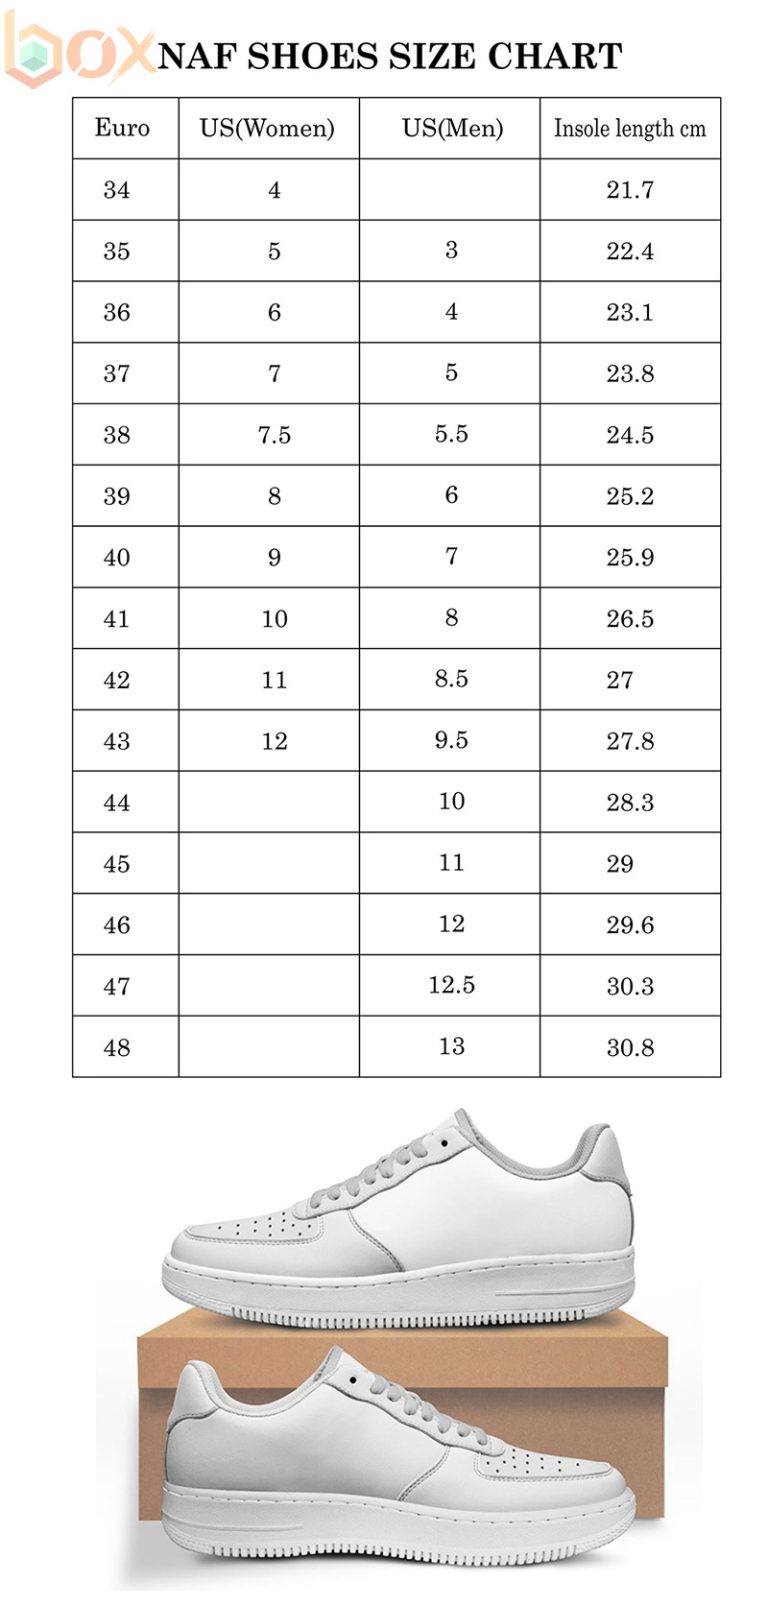 NAF Shoes Size Chart: